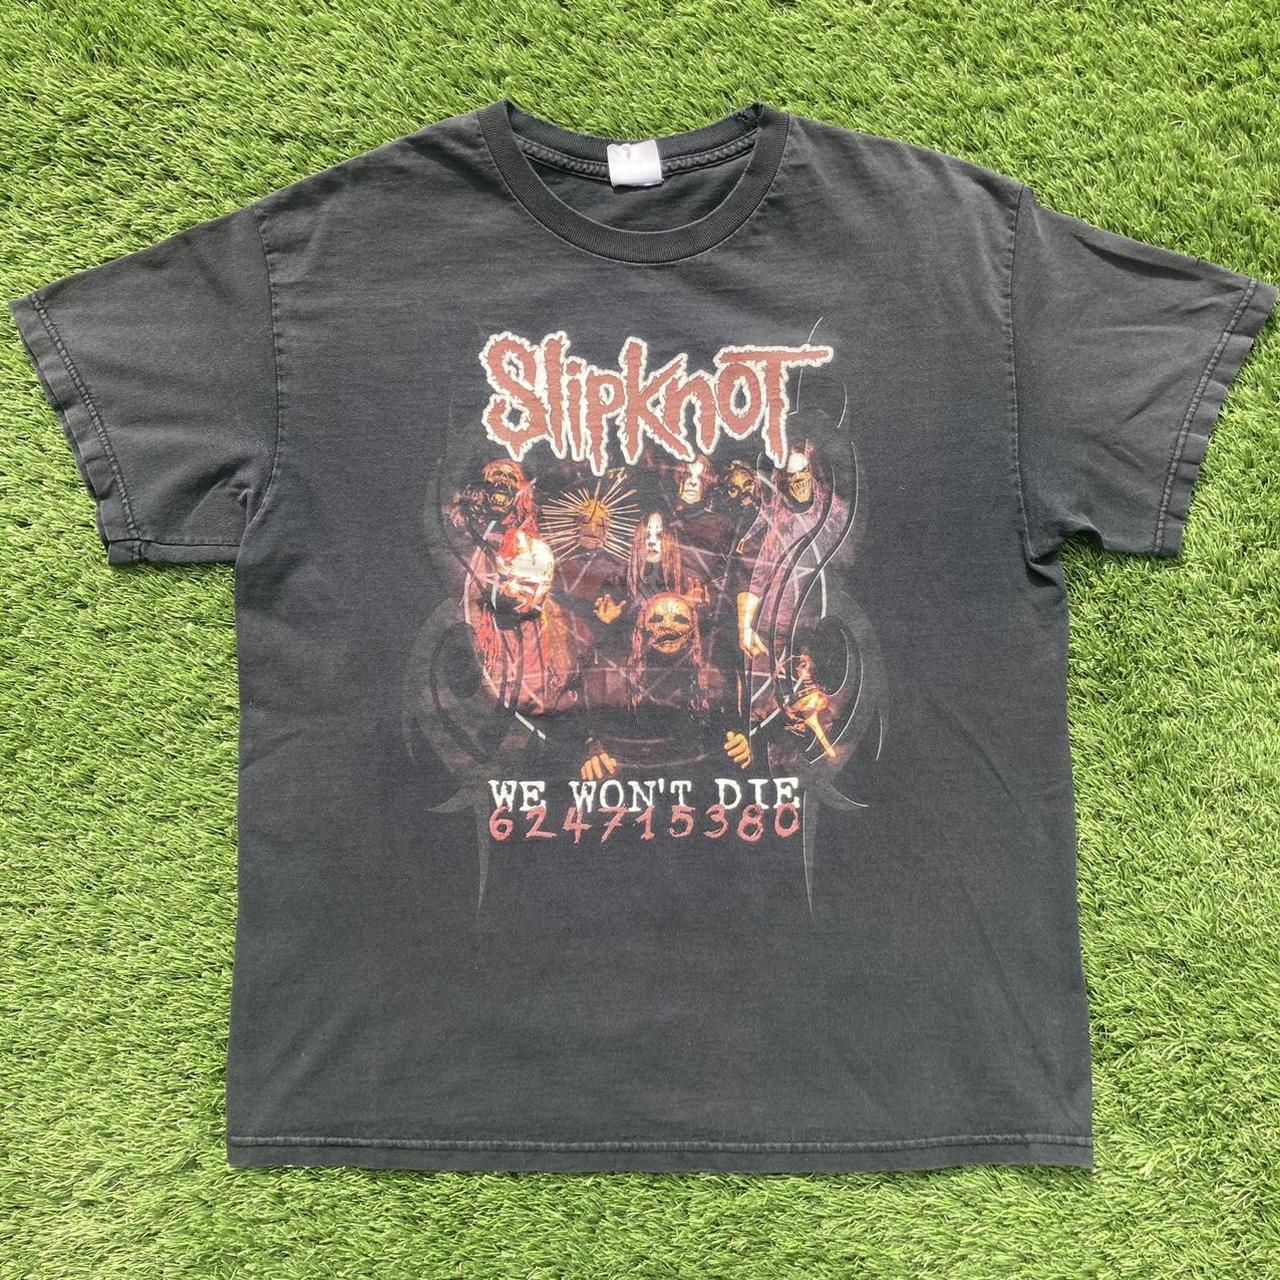 2004 Slipknot “We Won’t Die” band shirt.    tag